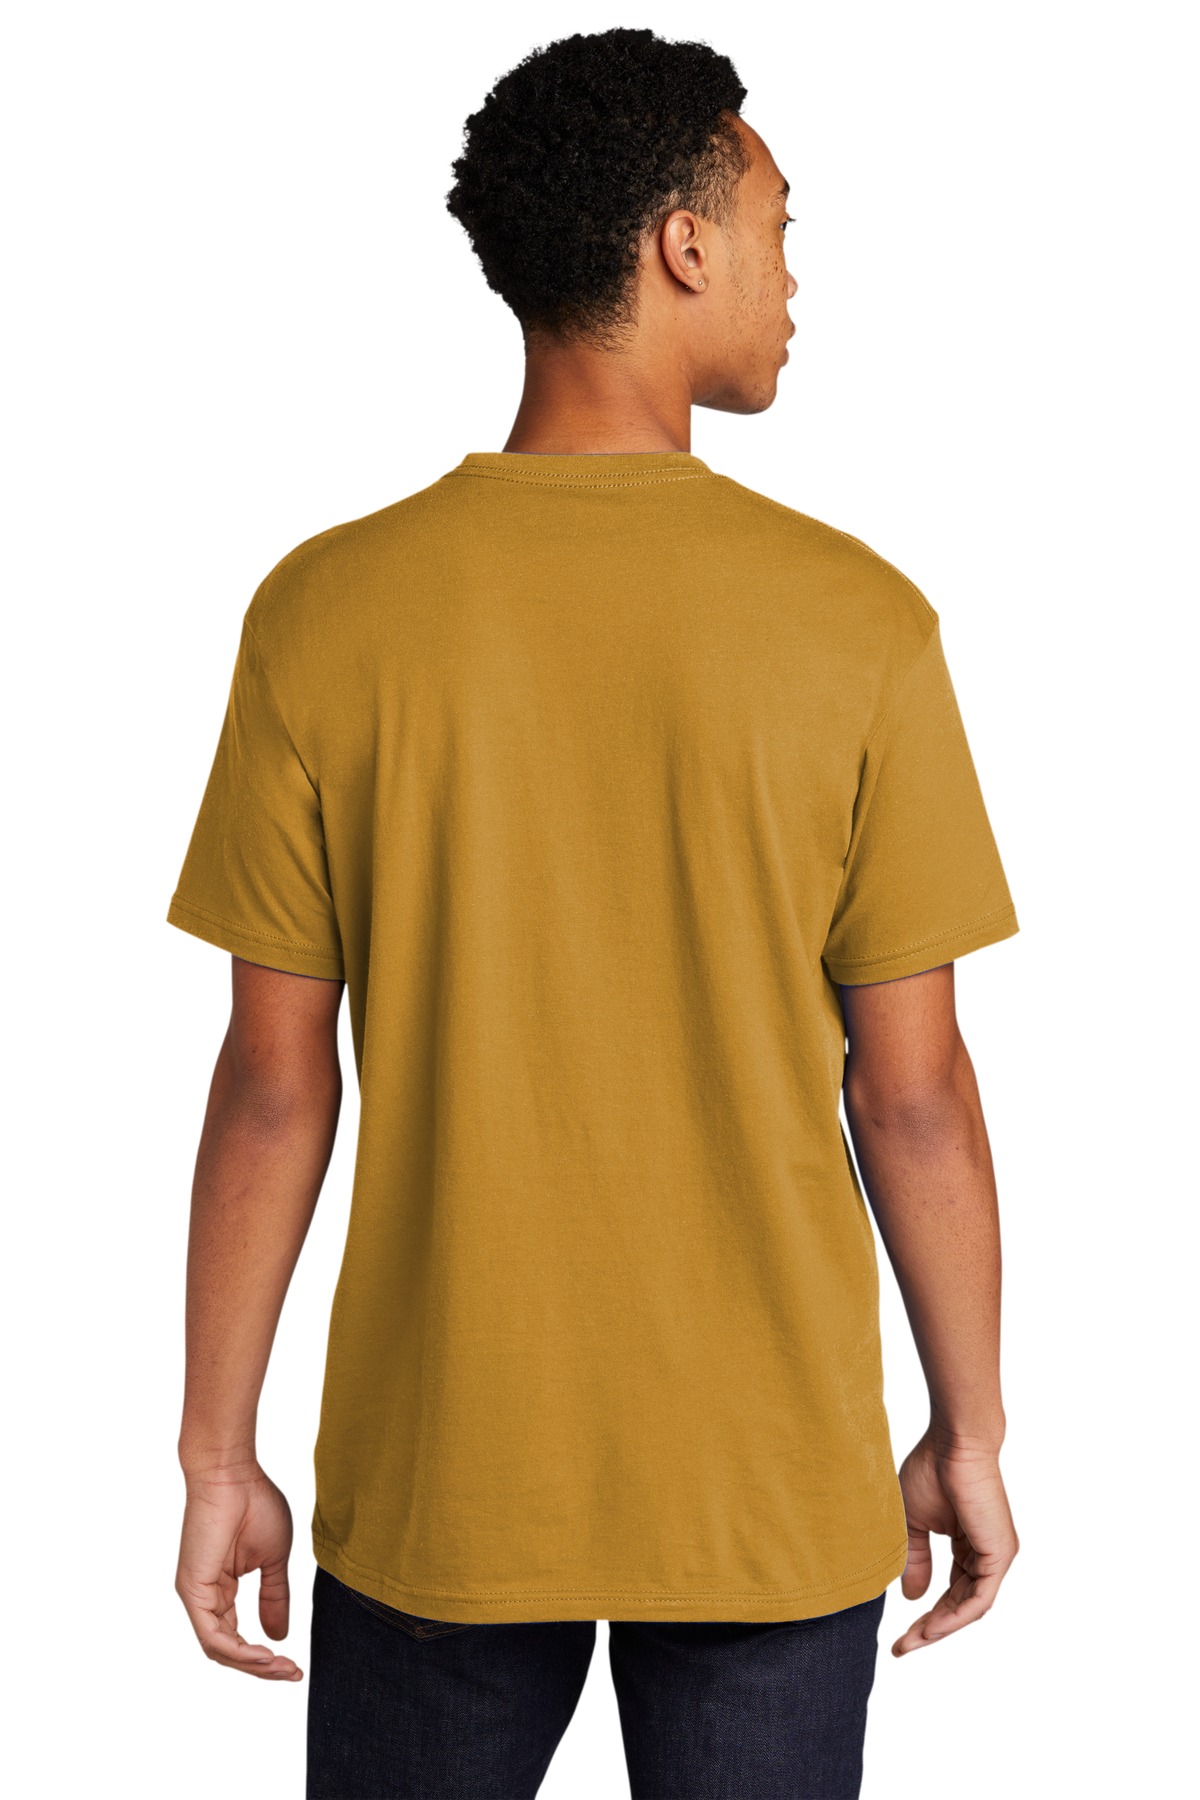 3600 Next Level Unisex Cotton T-Shirt